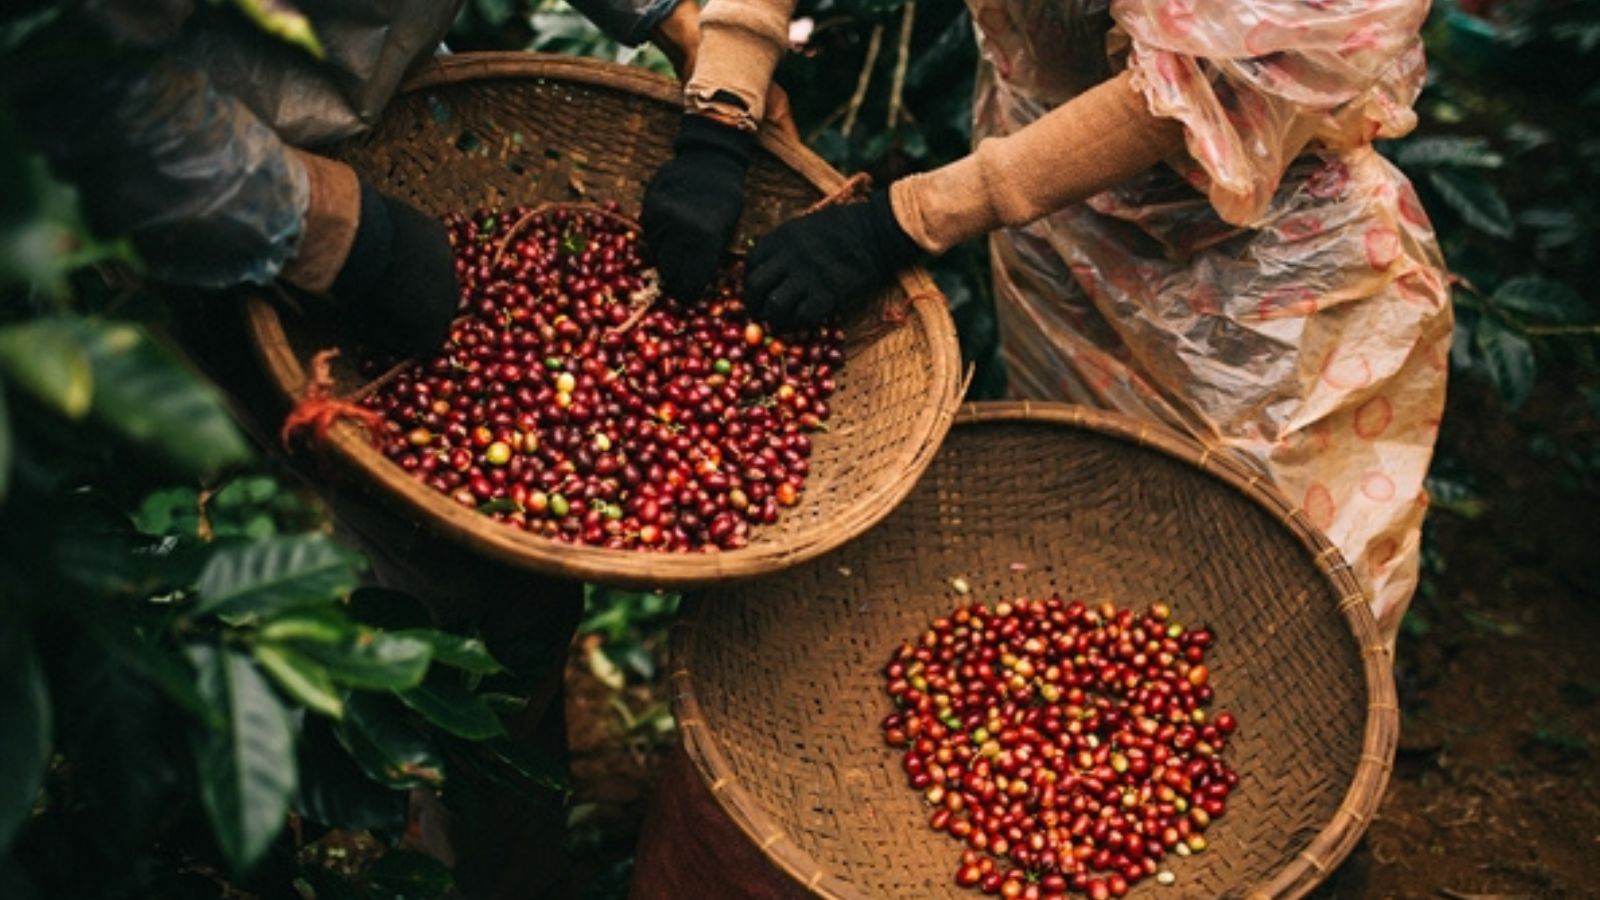 CÀ PHÊ ĐẶC SẢN (Specialty coffee) là gì? Khác biệt của cà phê đặc sản Việt  Nam và cà phê thương mại